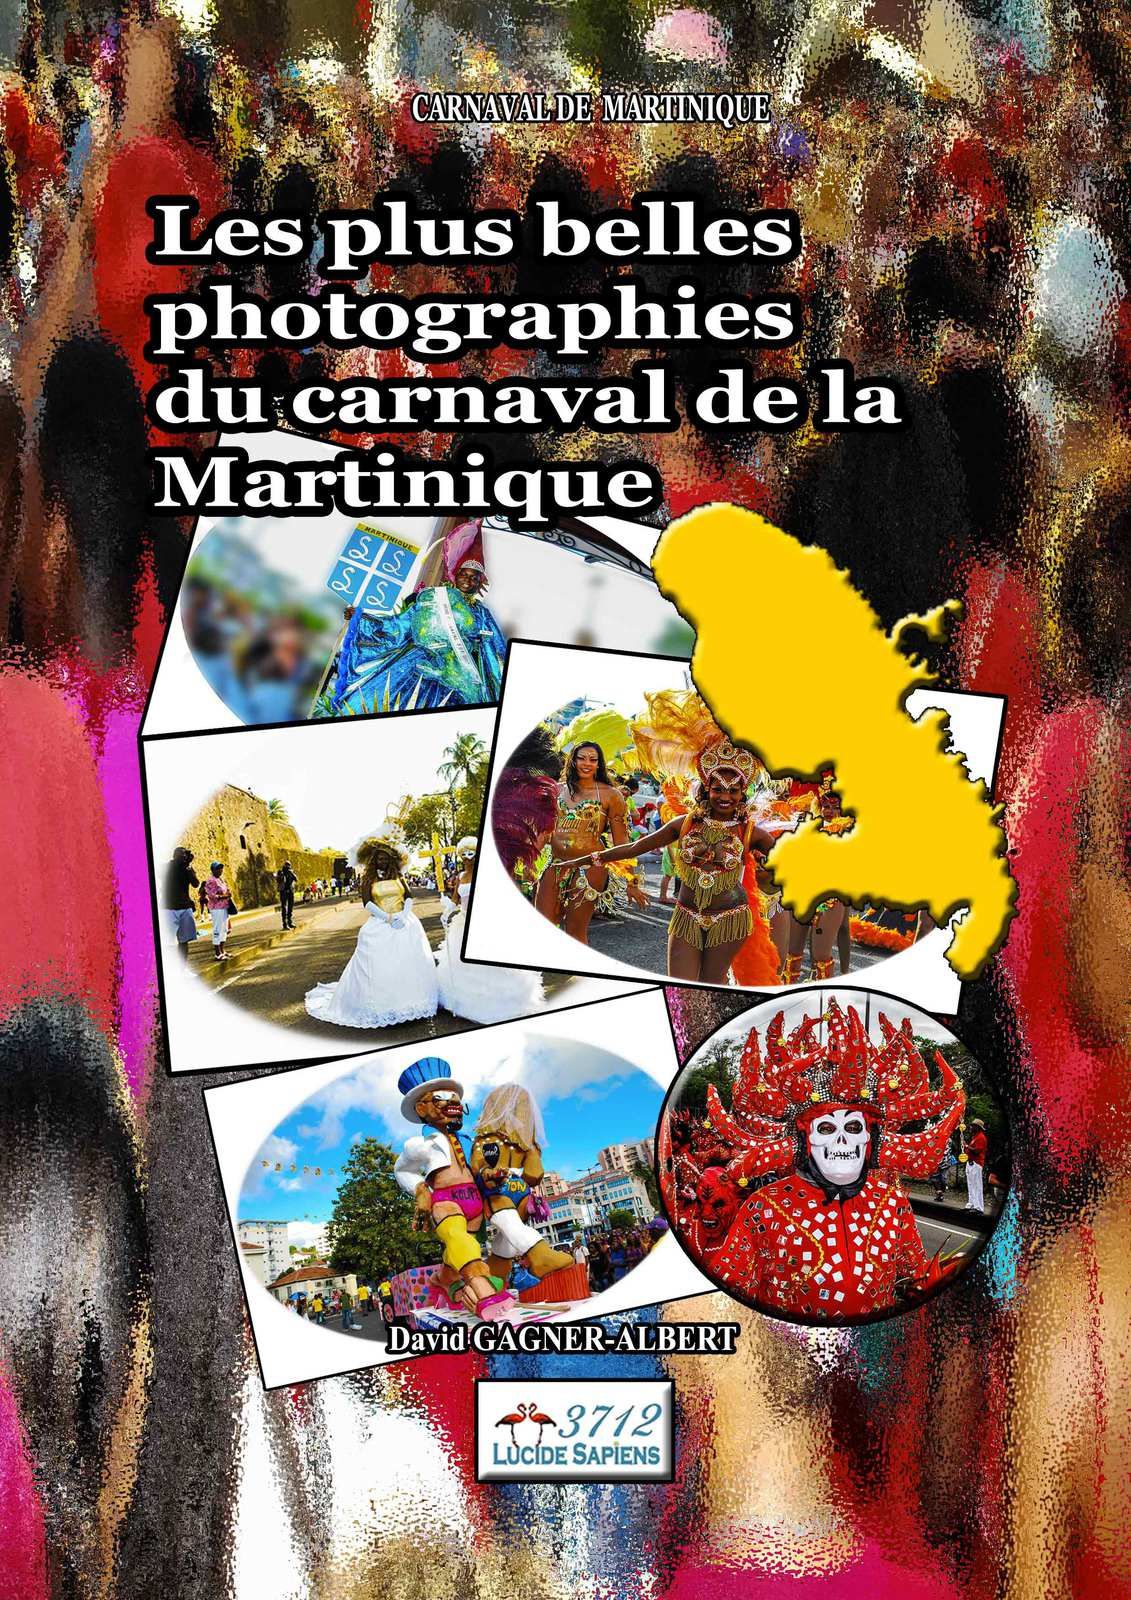 Les plus belles photographies du carnaval de Martinique